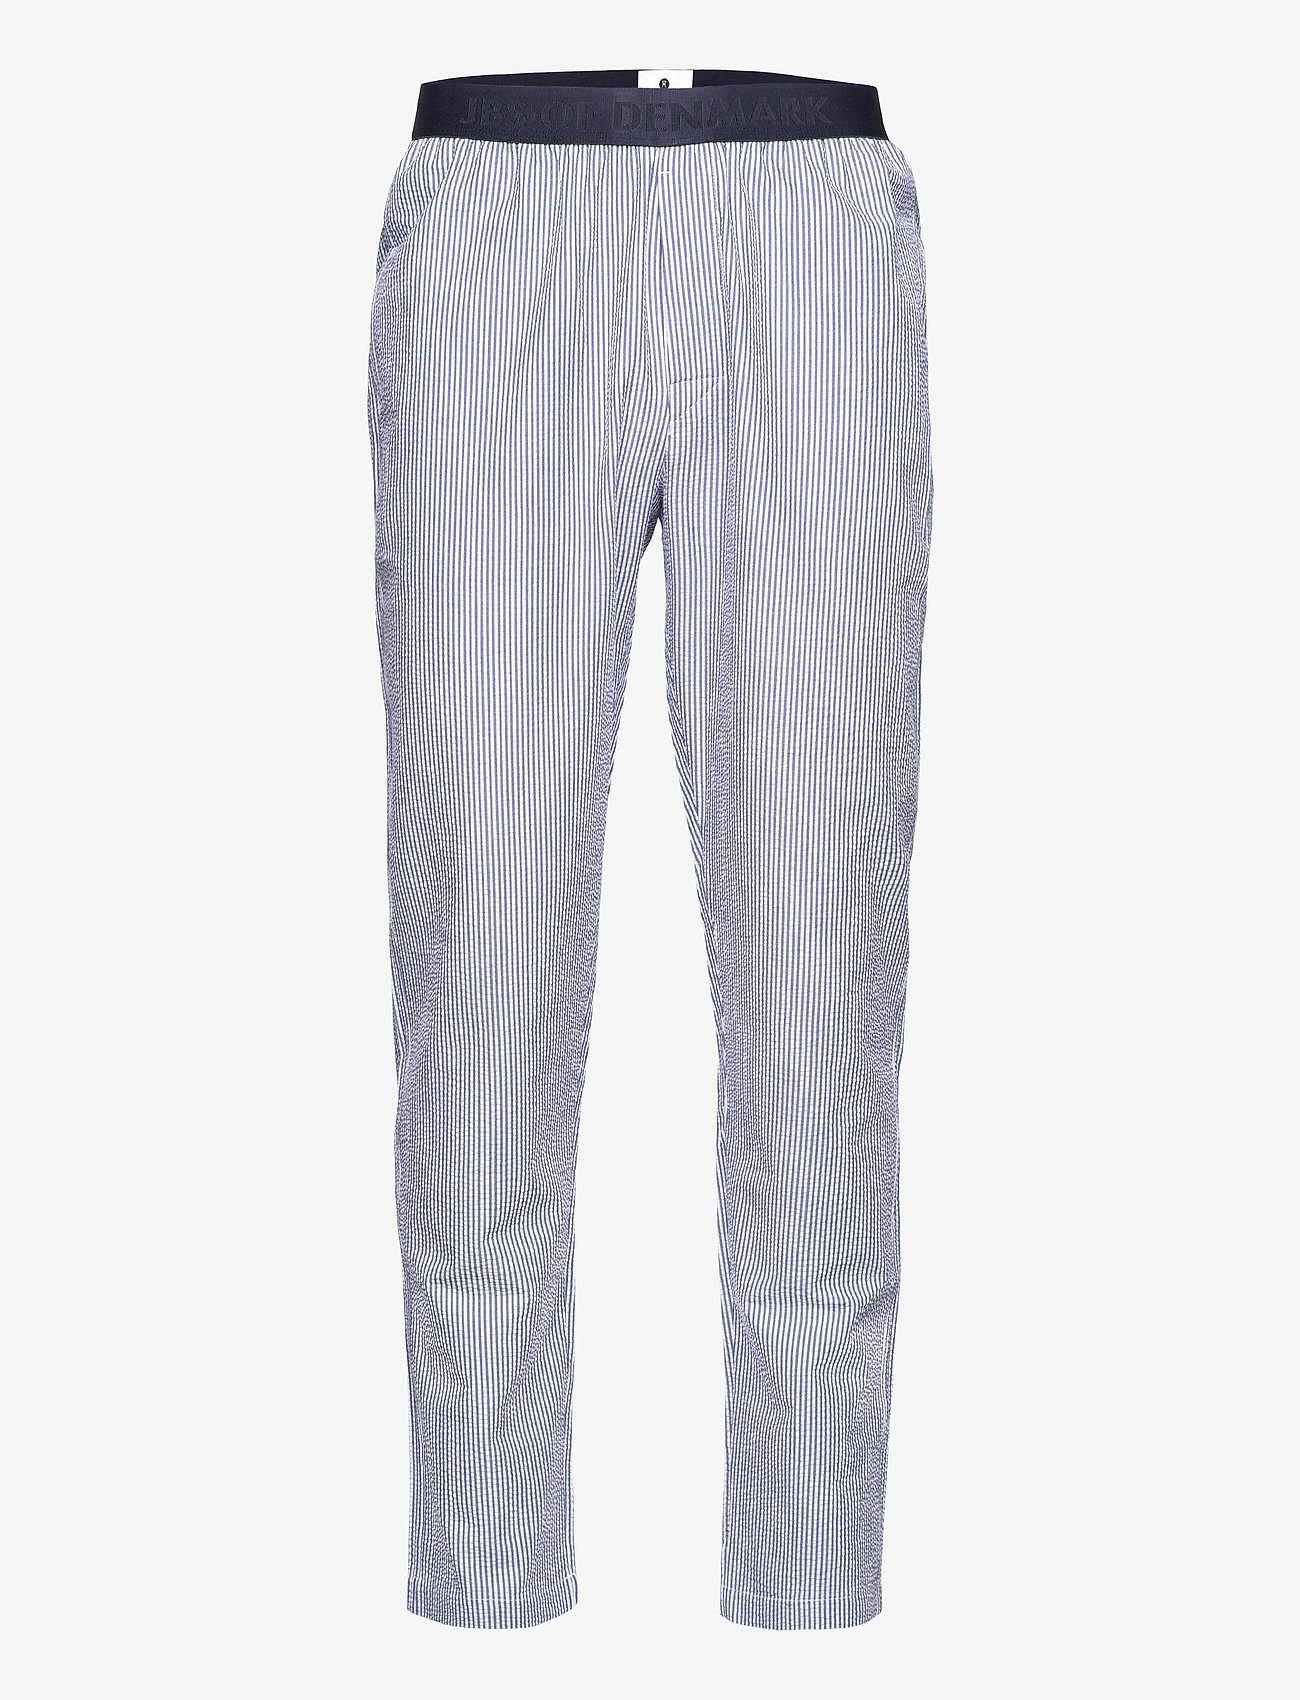 JBS of Denmark - JBS of DK seersucker pant - nightwear - multi - 0